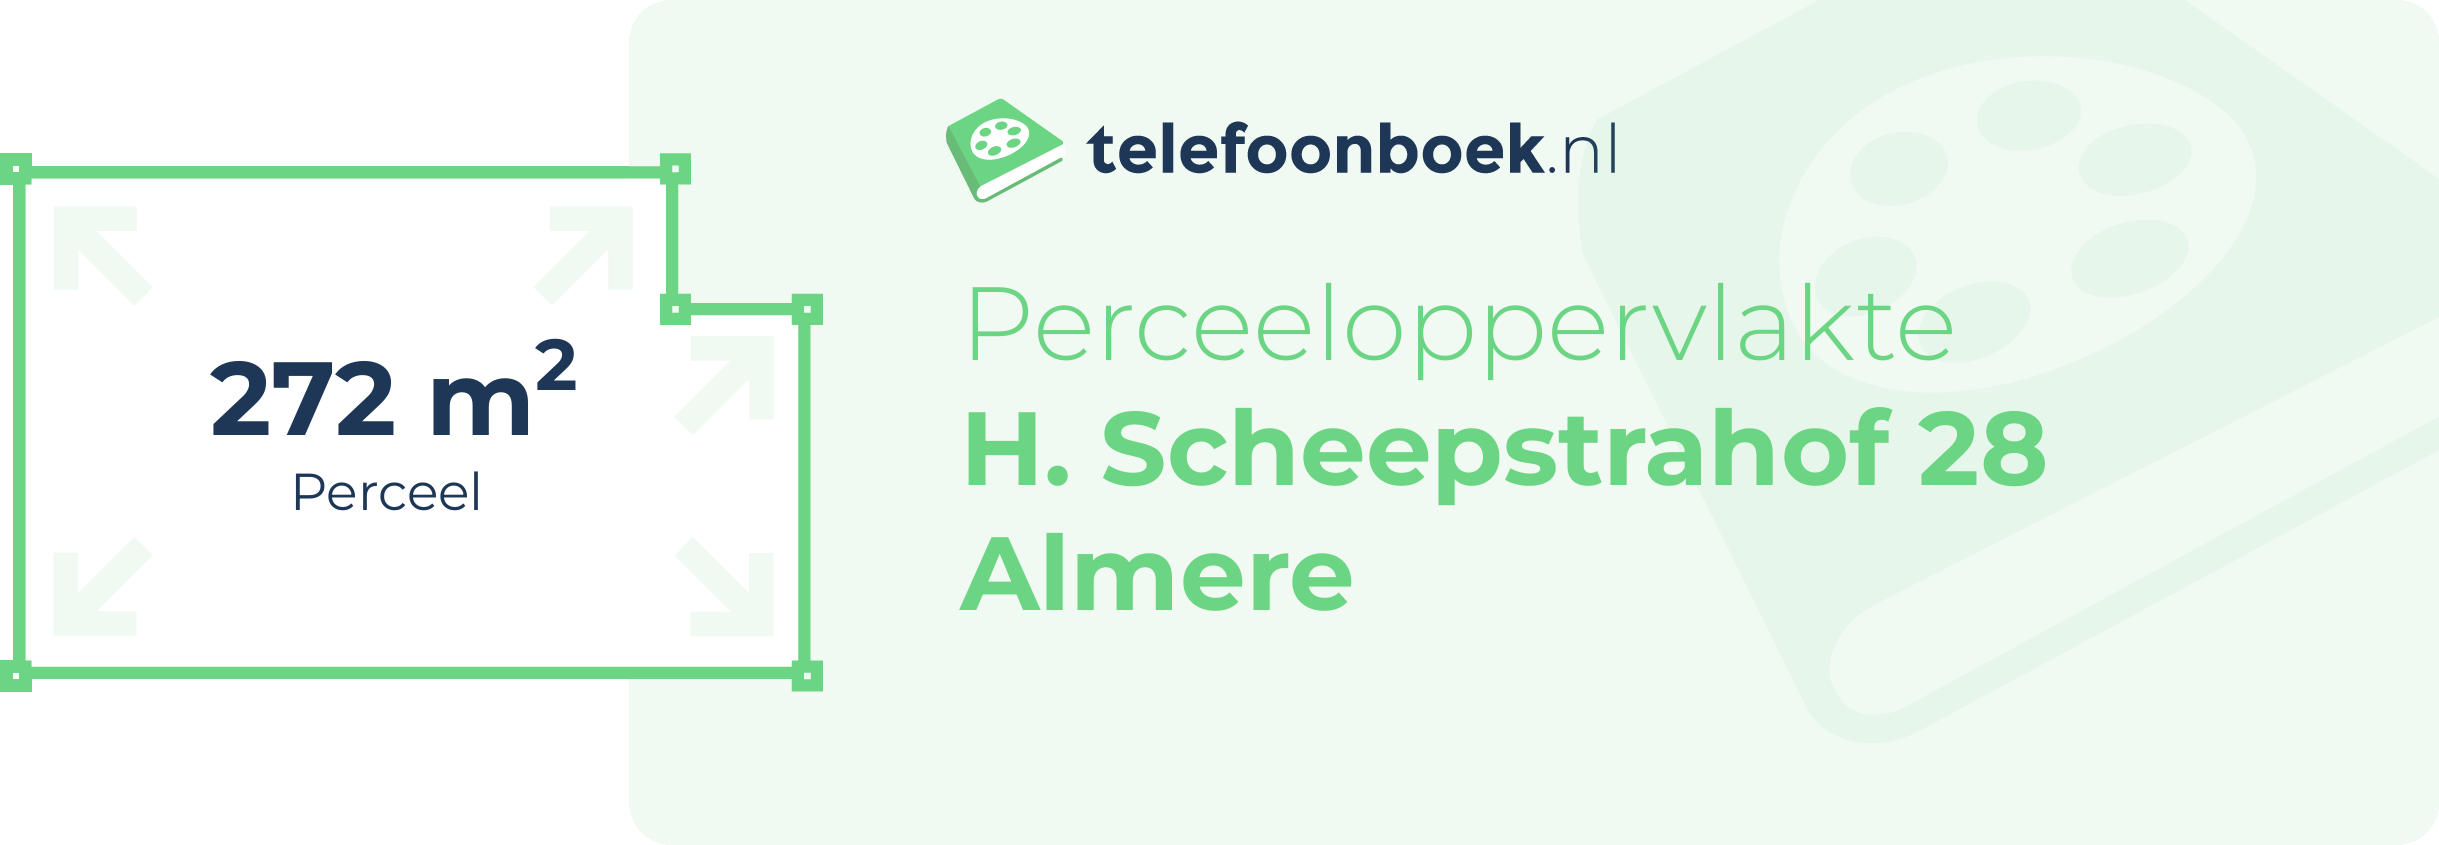 Perceeloppervlakte H. Scheepstrahof 28 Almere